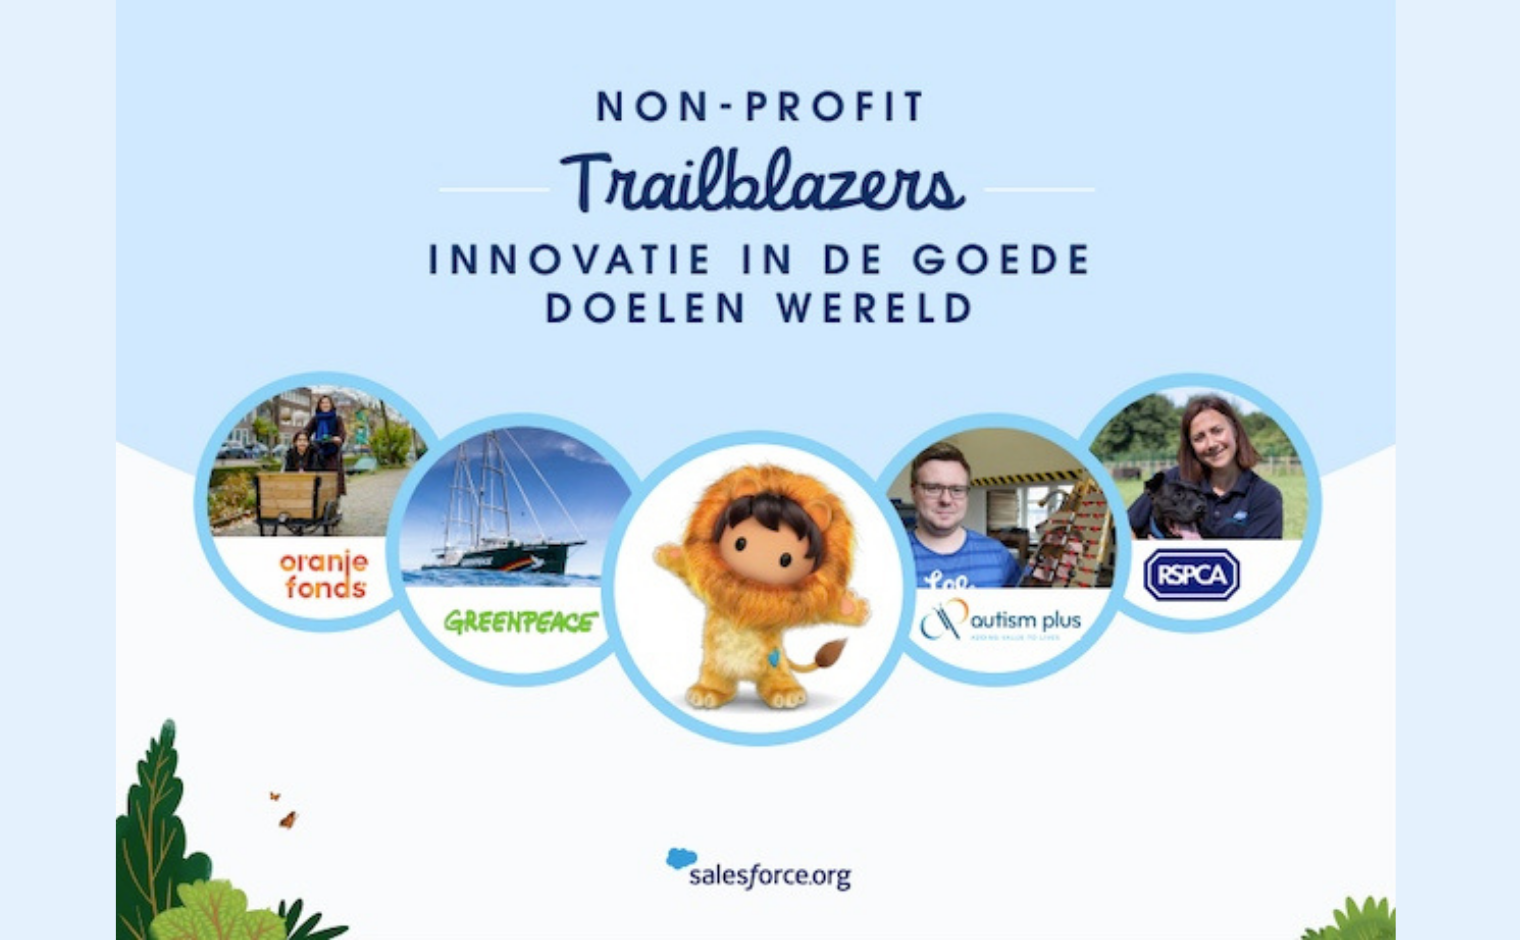 Cover van Non-profit Trailblazers, innovatie in de goede doelen wereld van Salesforce.org.